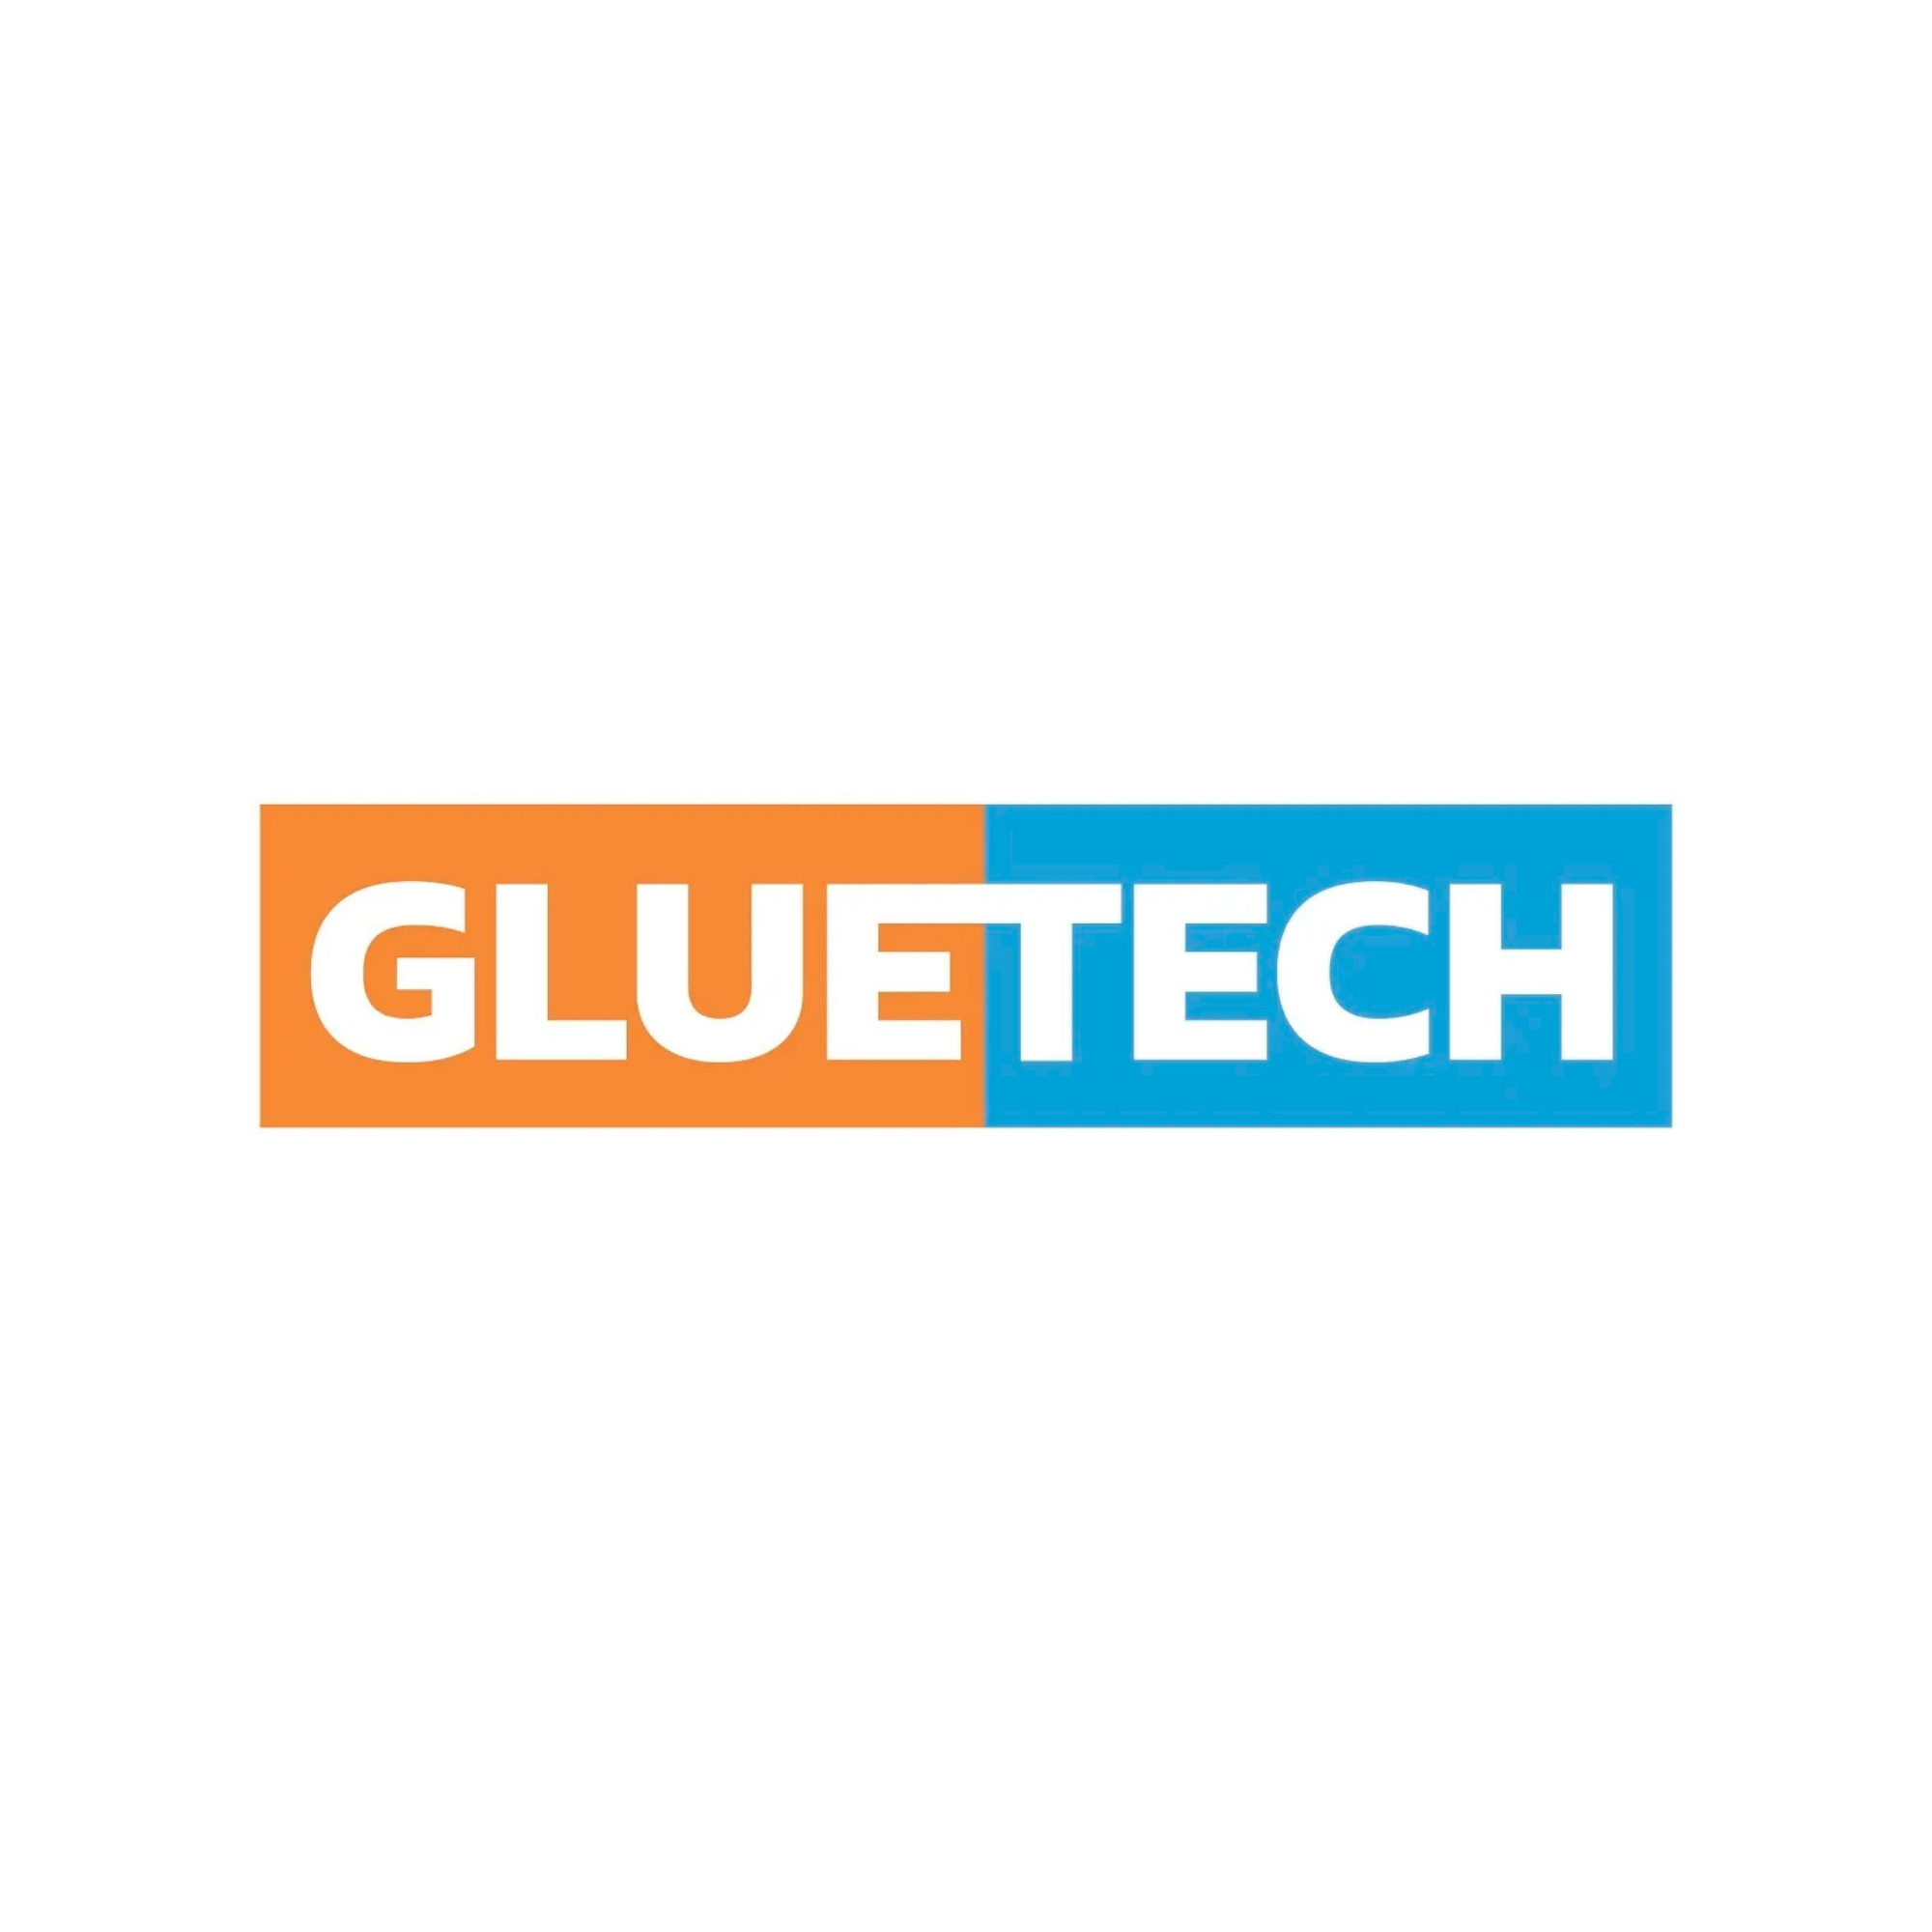 Gluetech